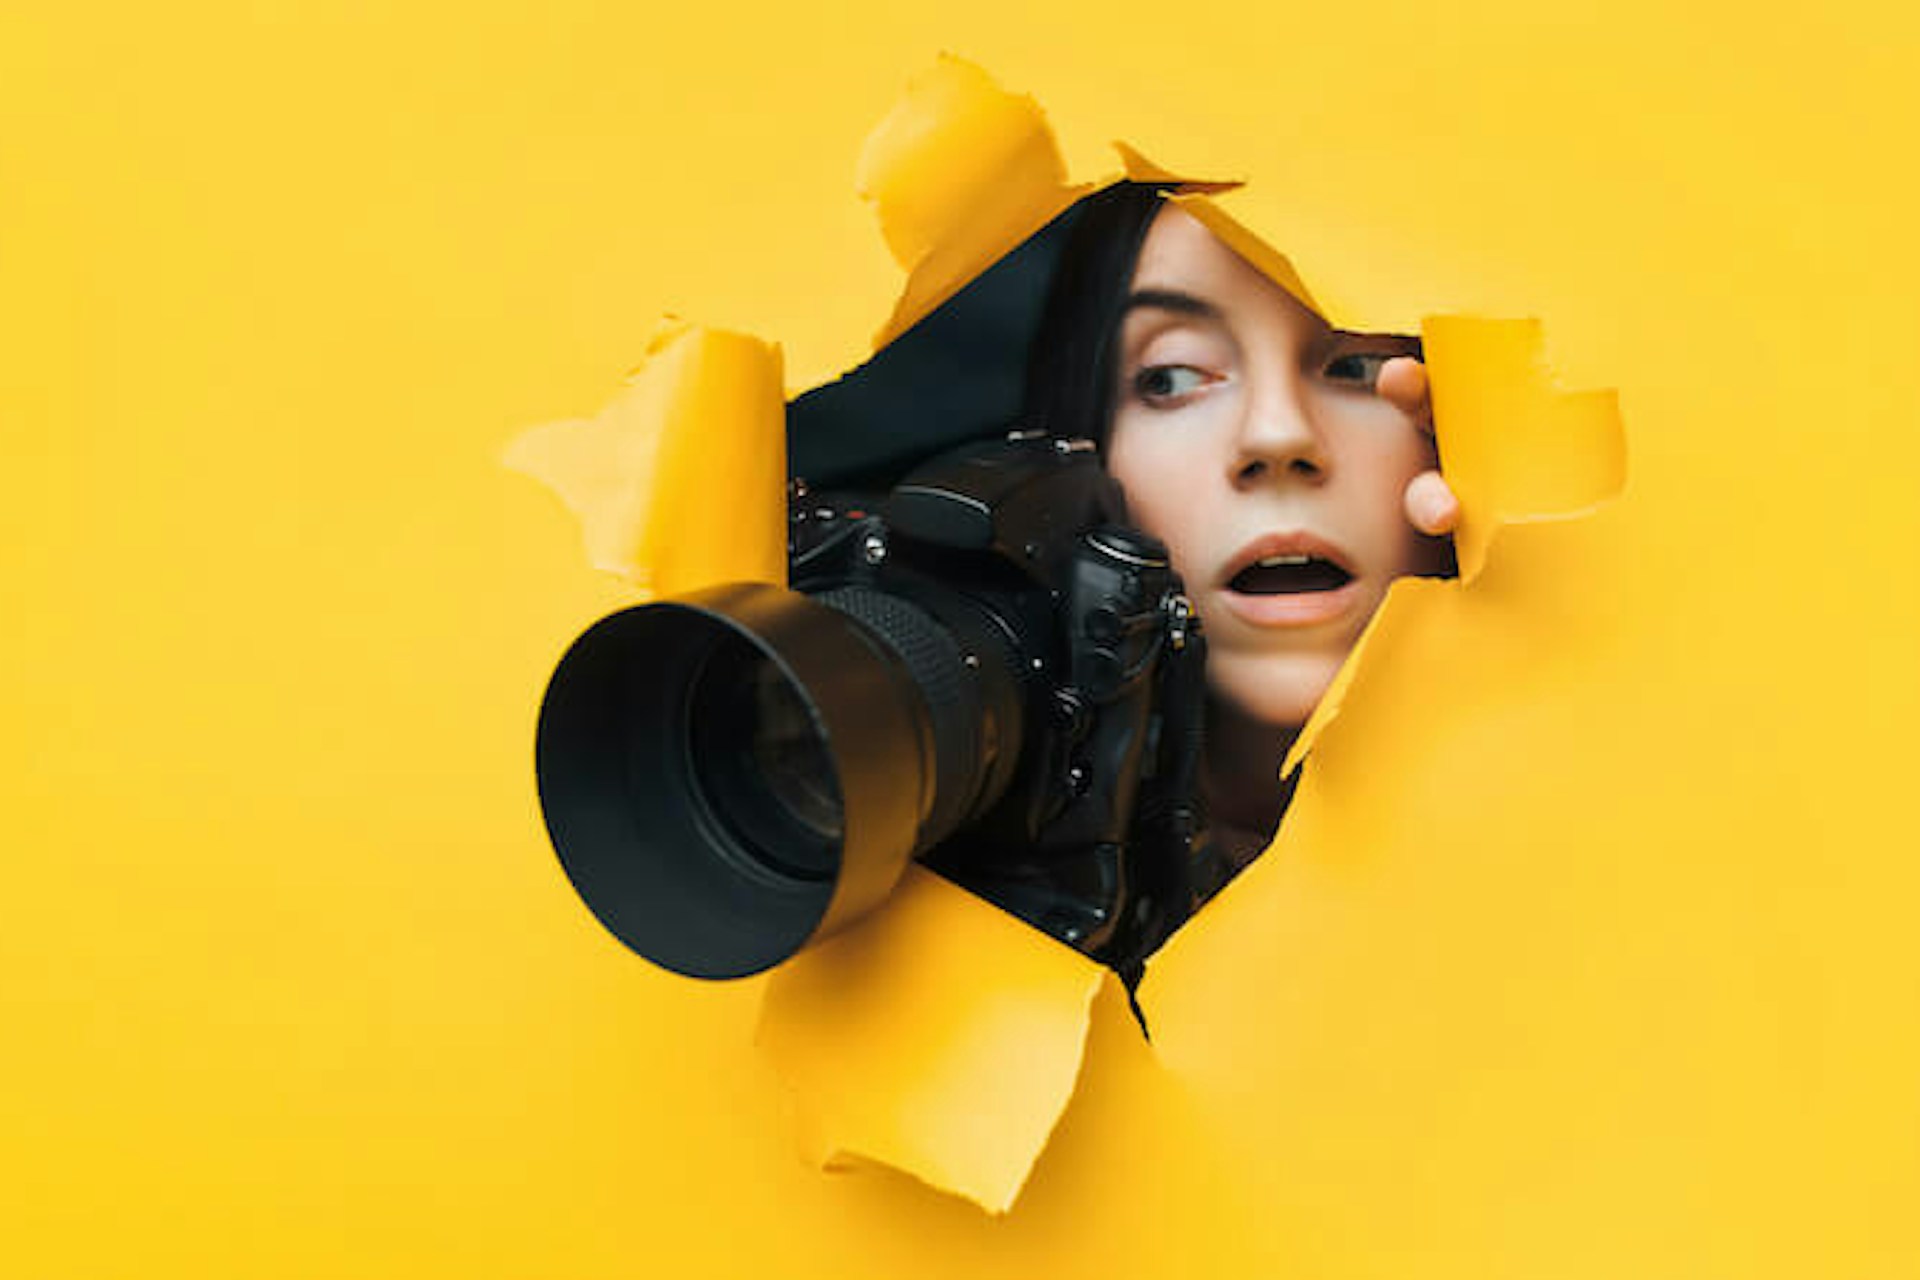 Man sieht eine junge Frau mit einer Kamera mit einem großen Objektiv durch eine gelbe Pappwand luken. Das Bild ist Header für unseren Beitrag zu elektronischen Pressespiegeln.